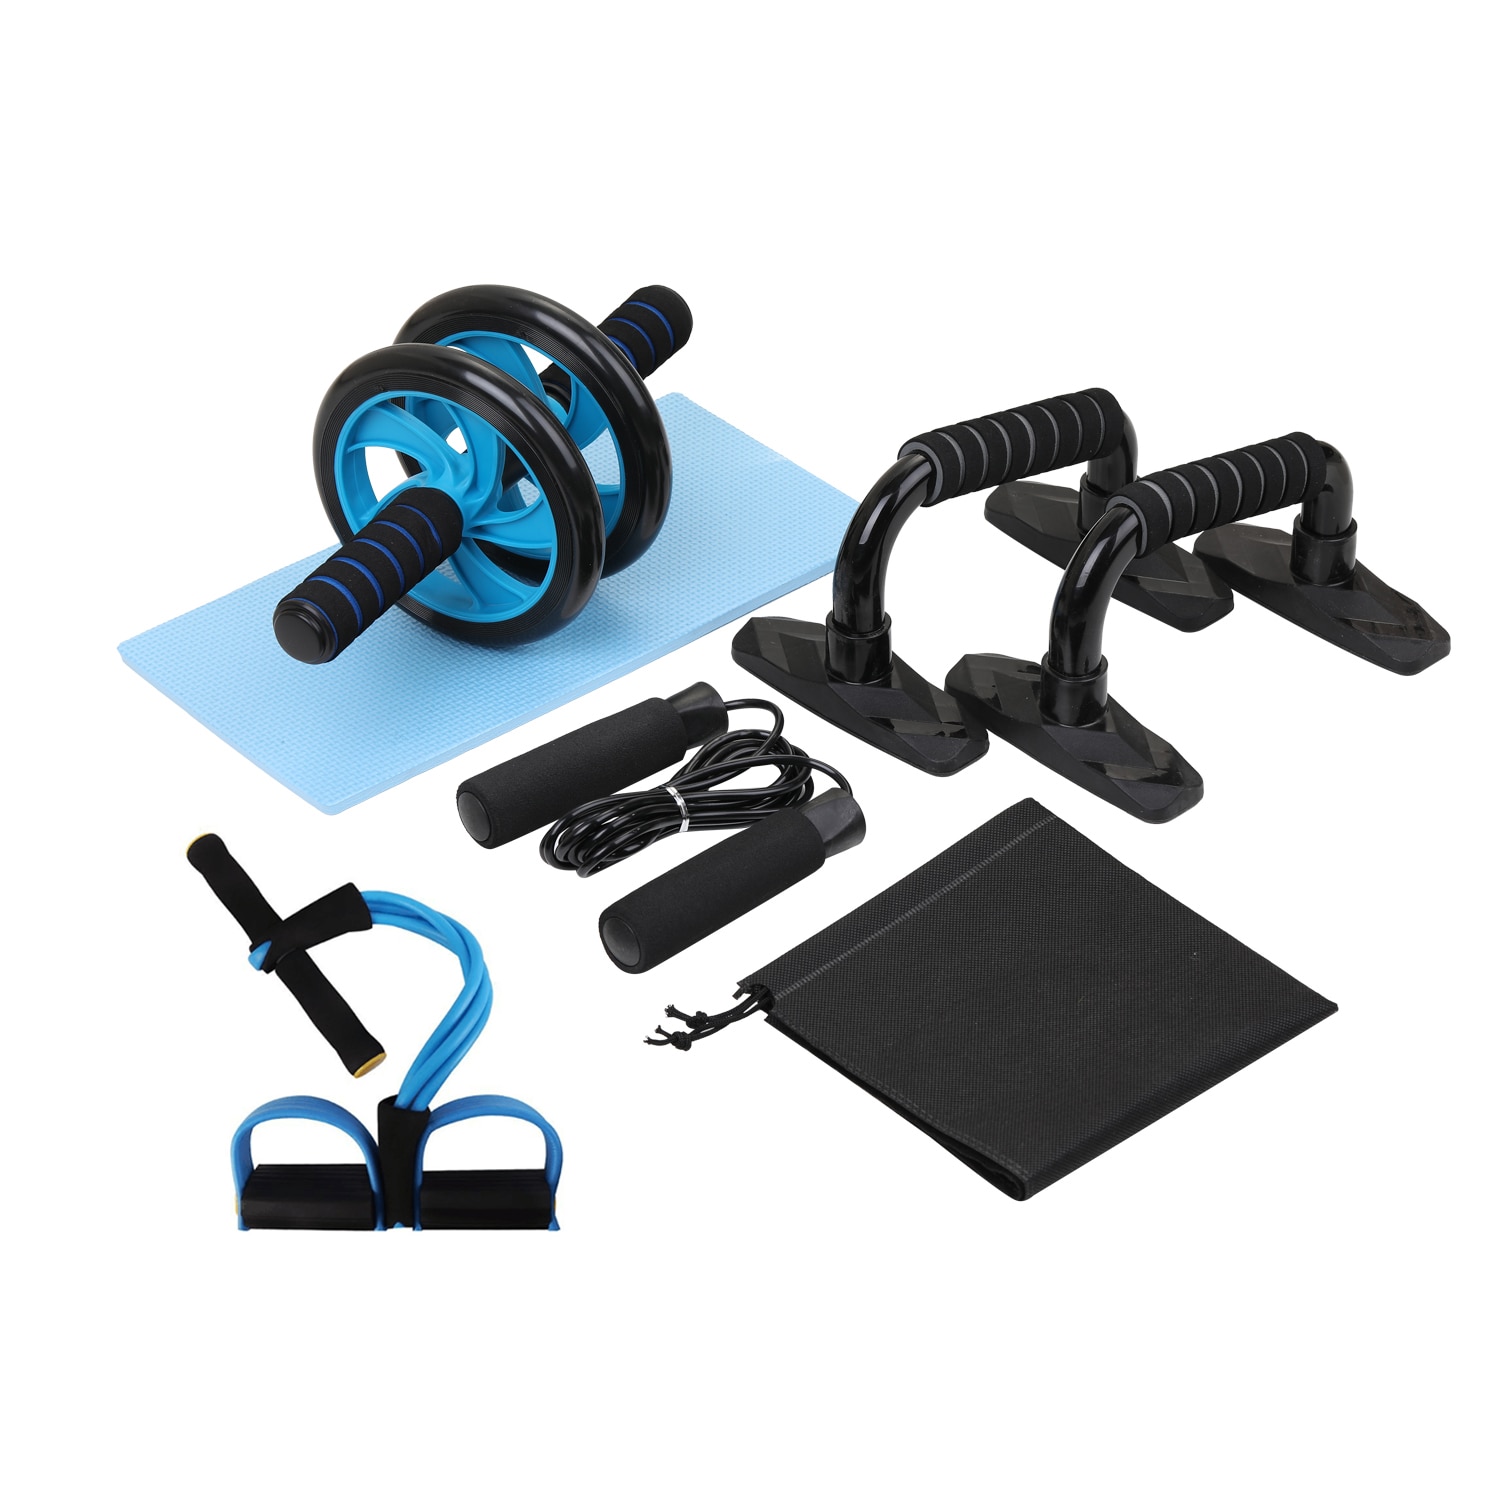 Gym fitness udstyr 4- i -1 muskel træner hjul rullesæt abdominal roller push up bar jump reb træning crossfit hjemme gym